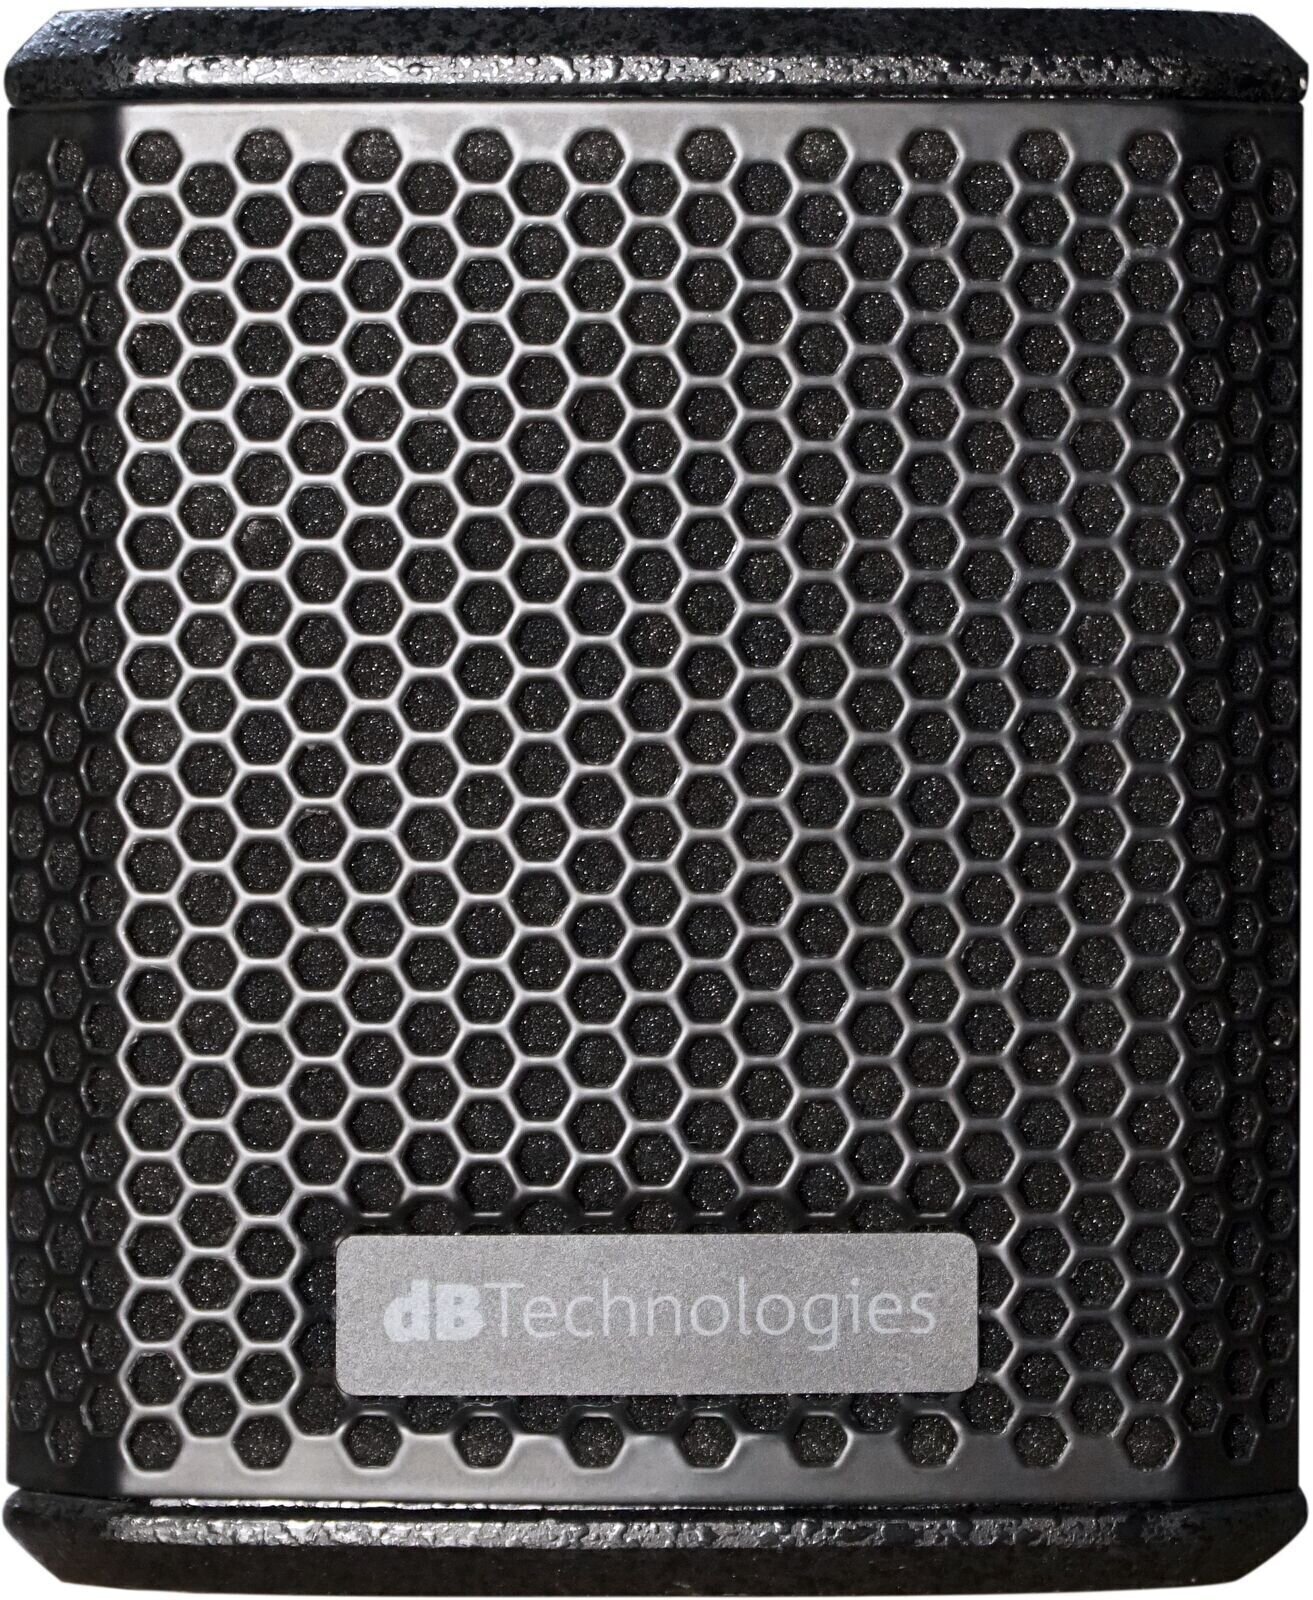 Väggmonterad högtalare dB Technologies LVX P5 8 OHM Väggmonterad högtalare